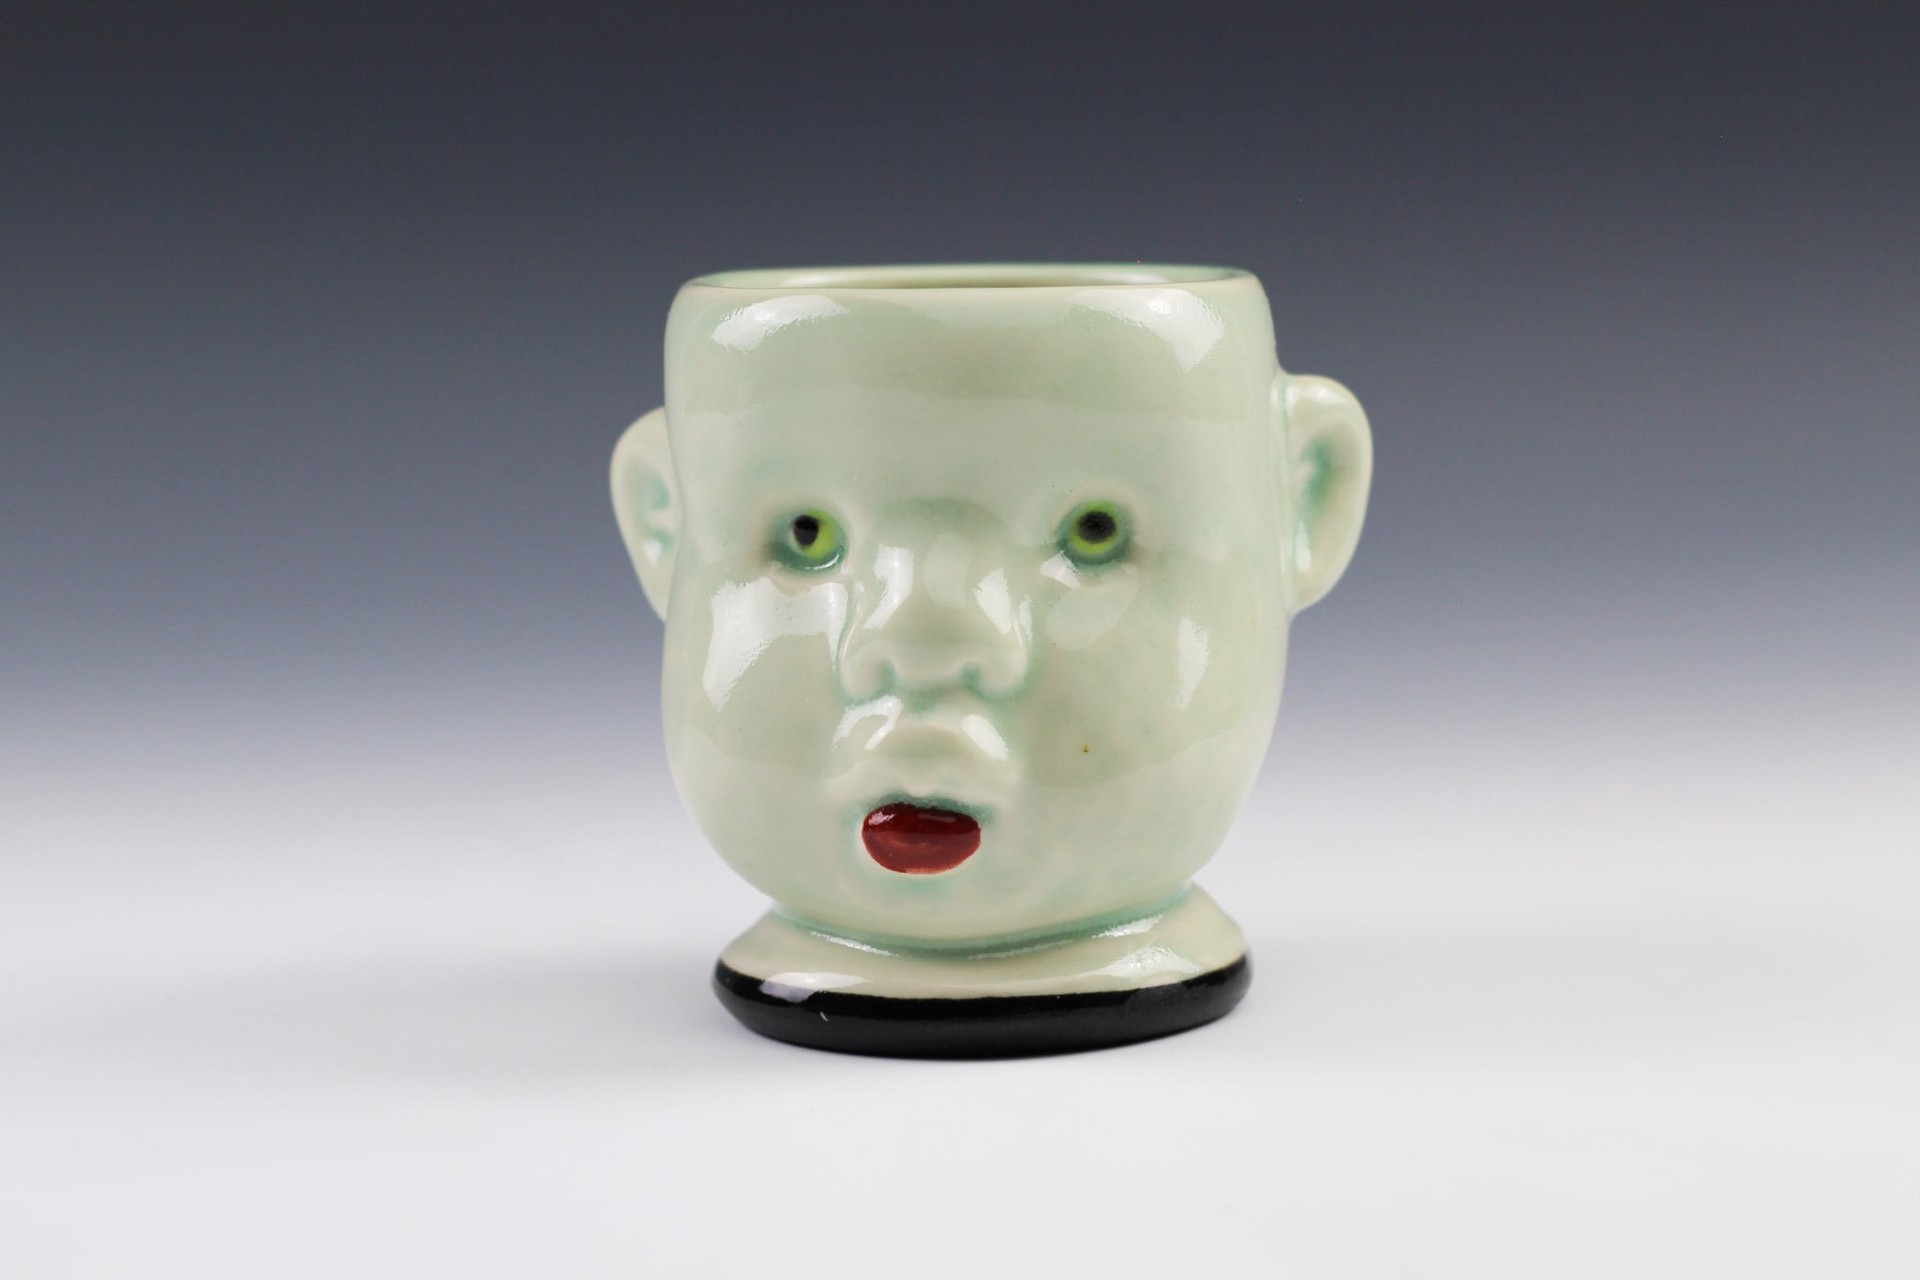 Doll Head Cup by Tom Bartel